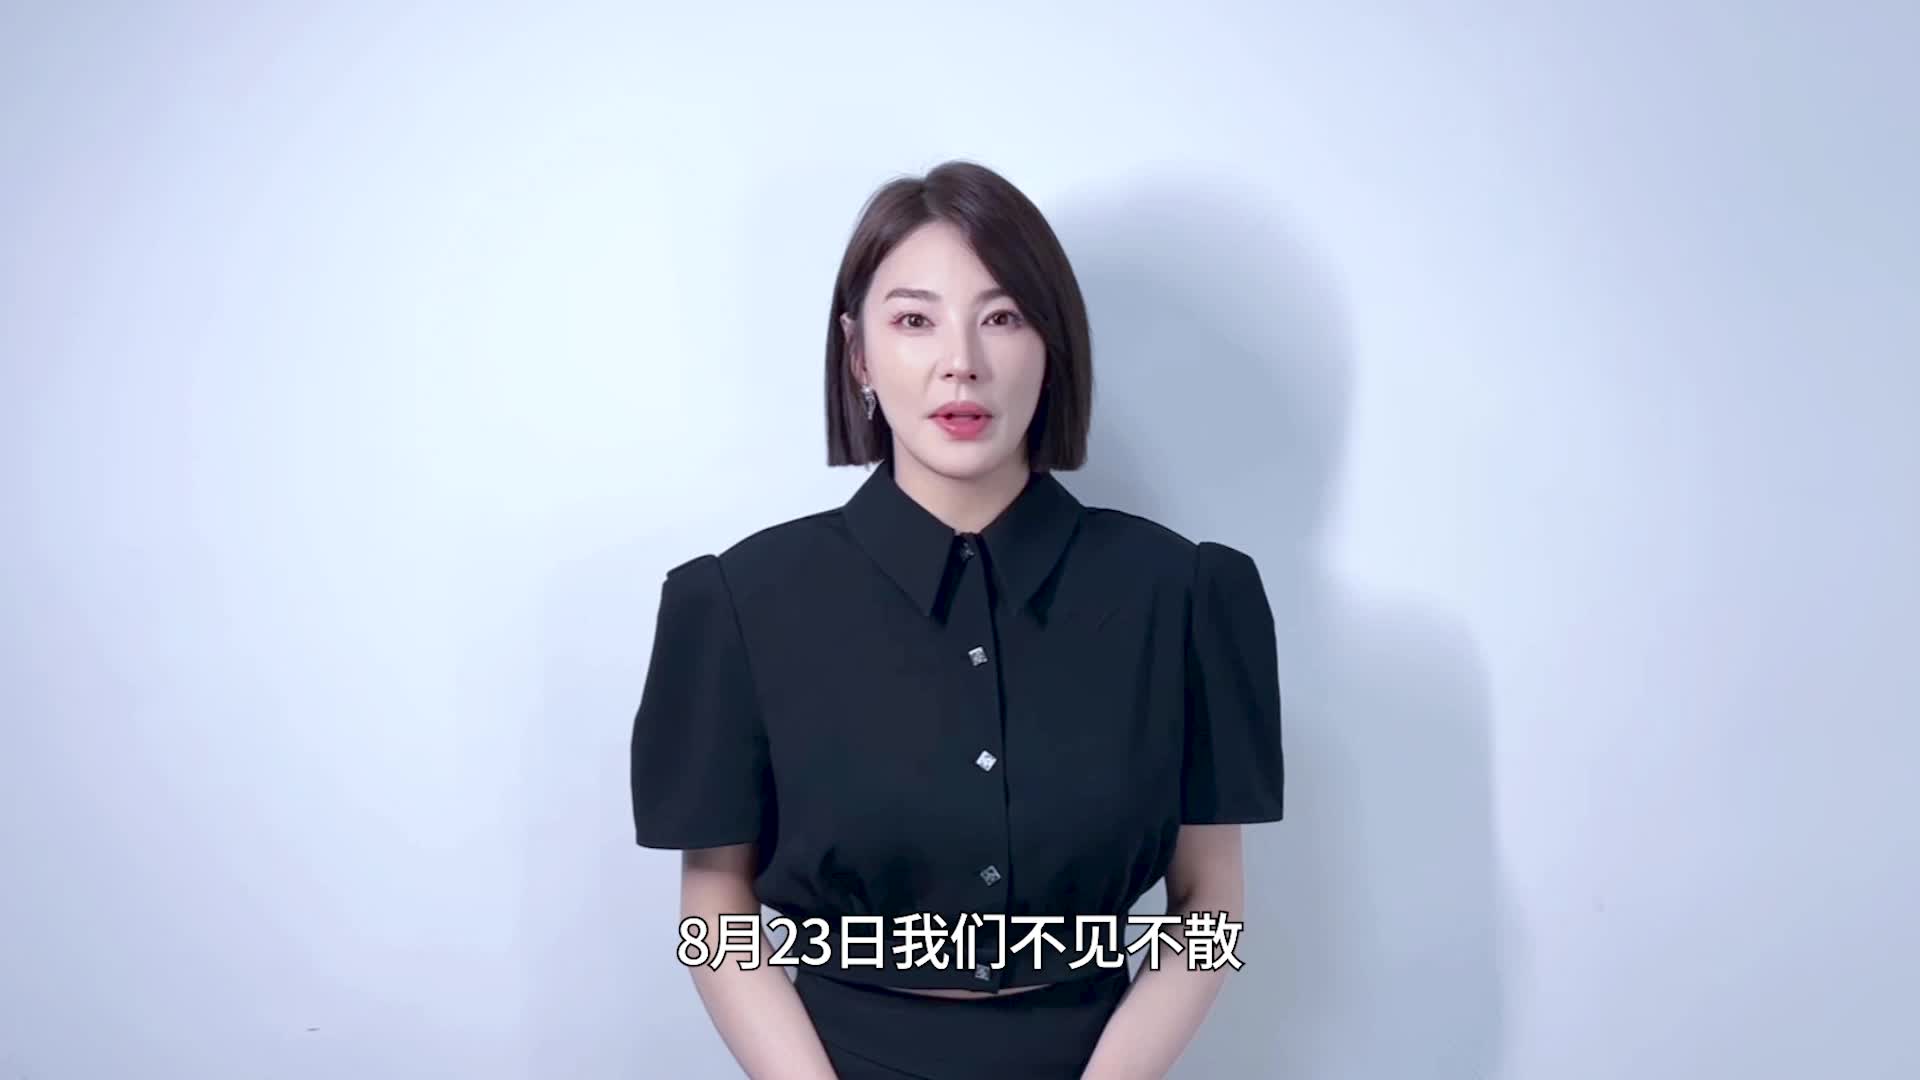 张雨绮为中国长春电影节三十周年送上祝福